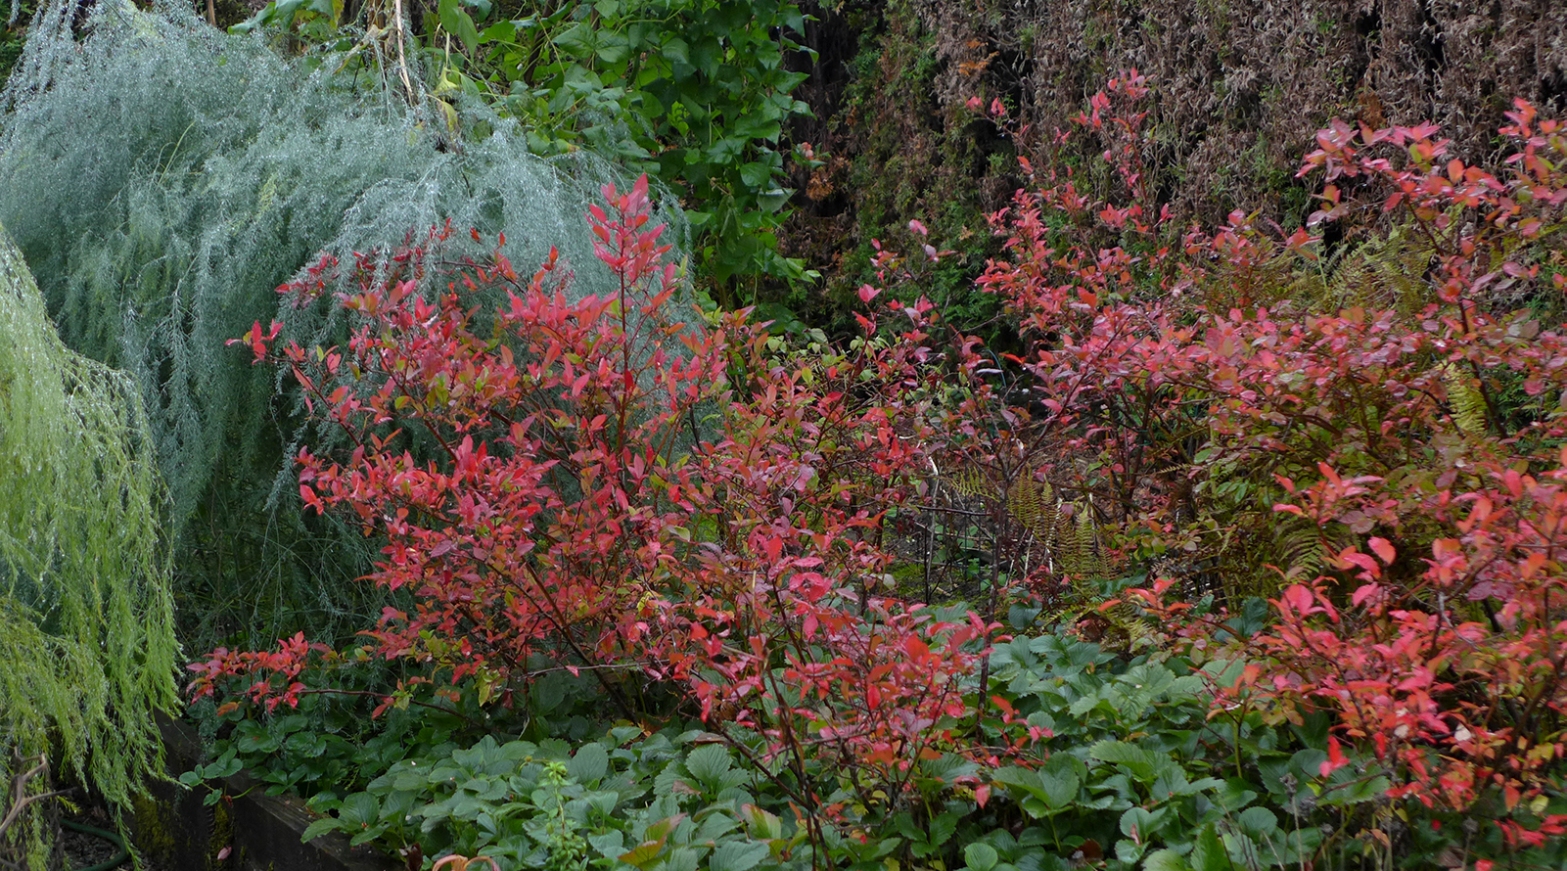 autumn or fall colours in a backyard vegetable garden